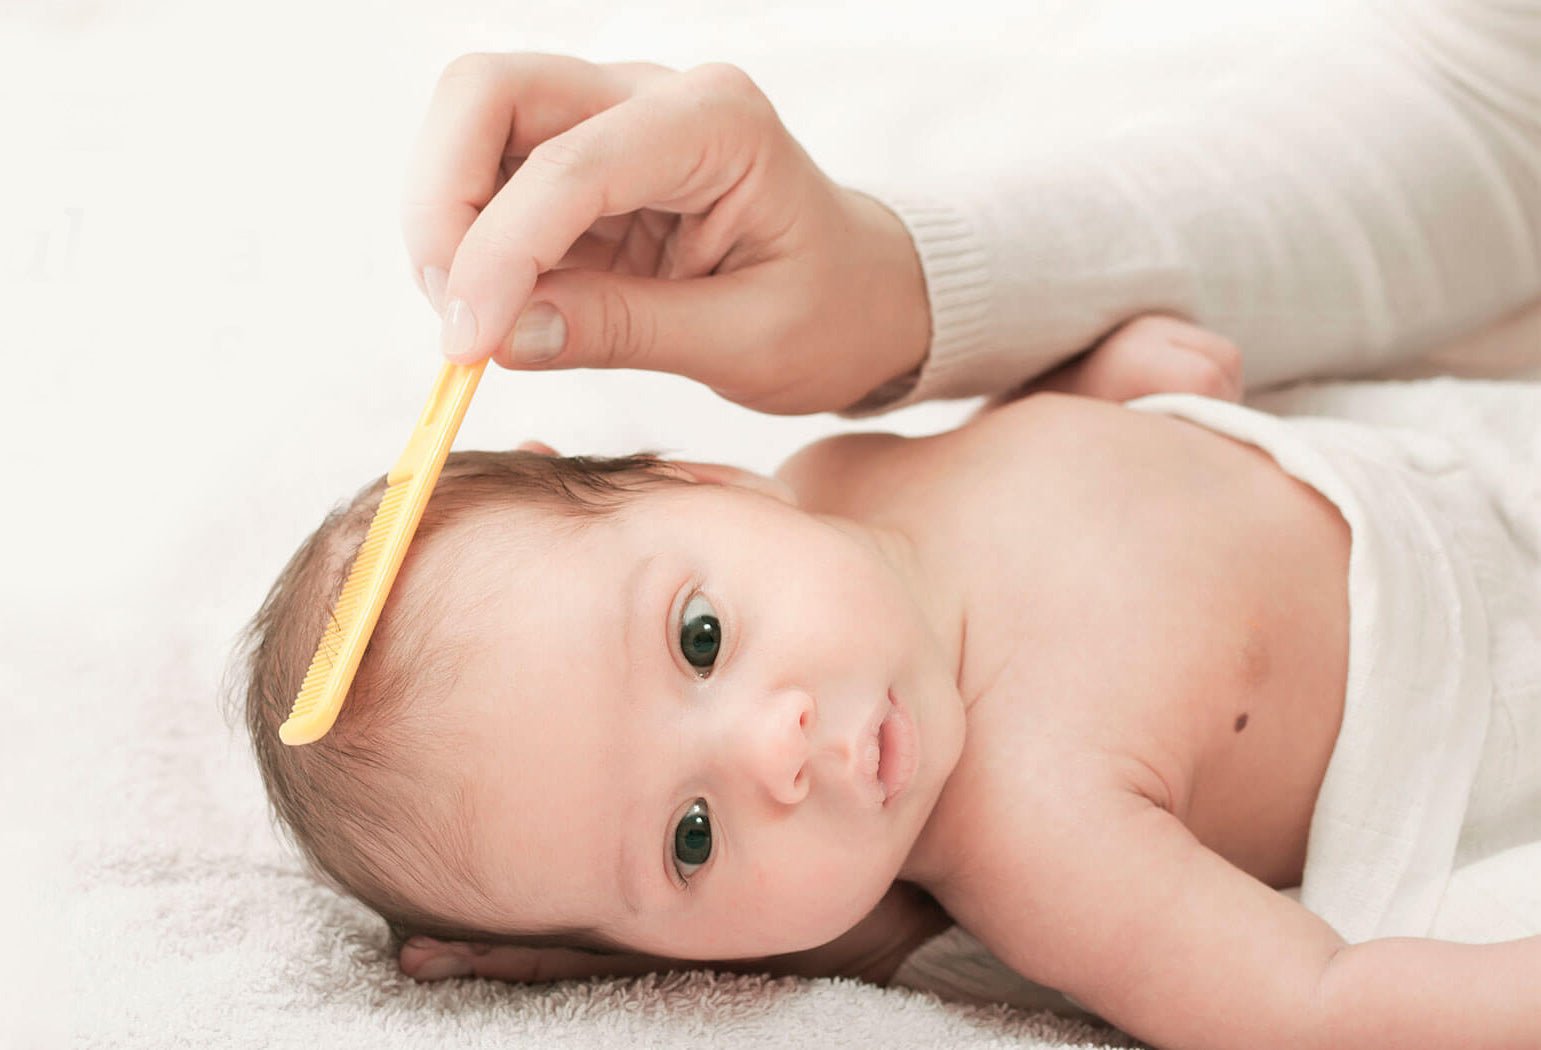 [Video] Come rimuovere la crosta lattea del neonato | Spio Kids